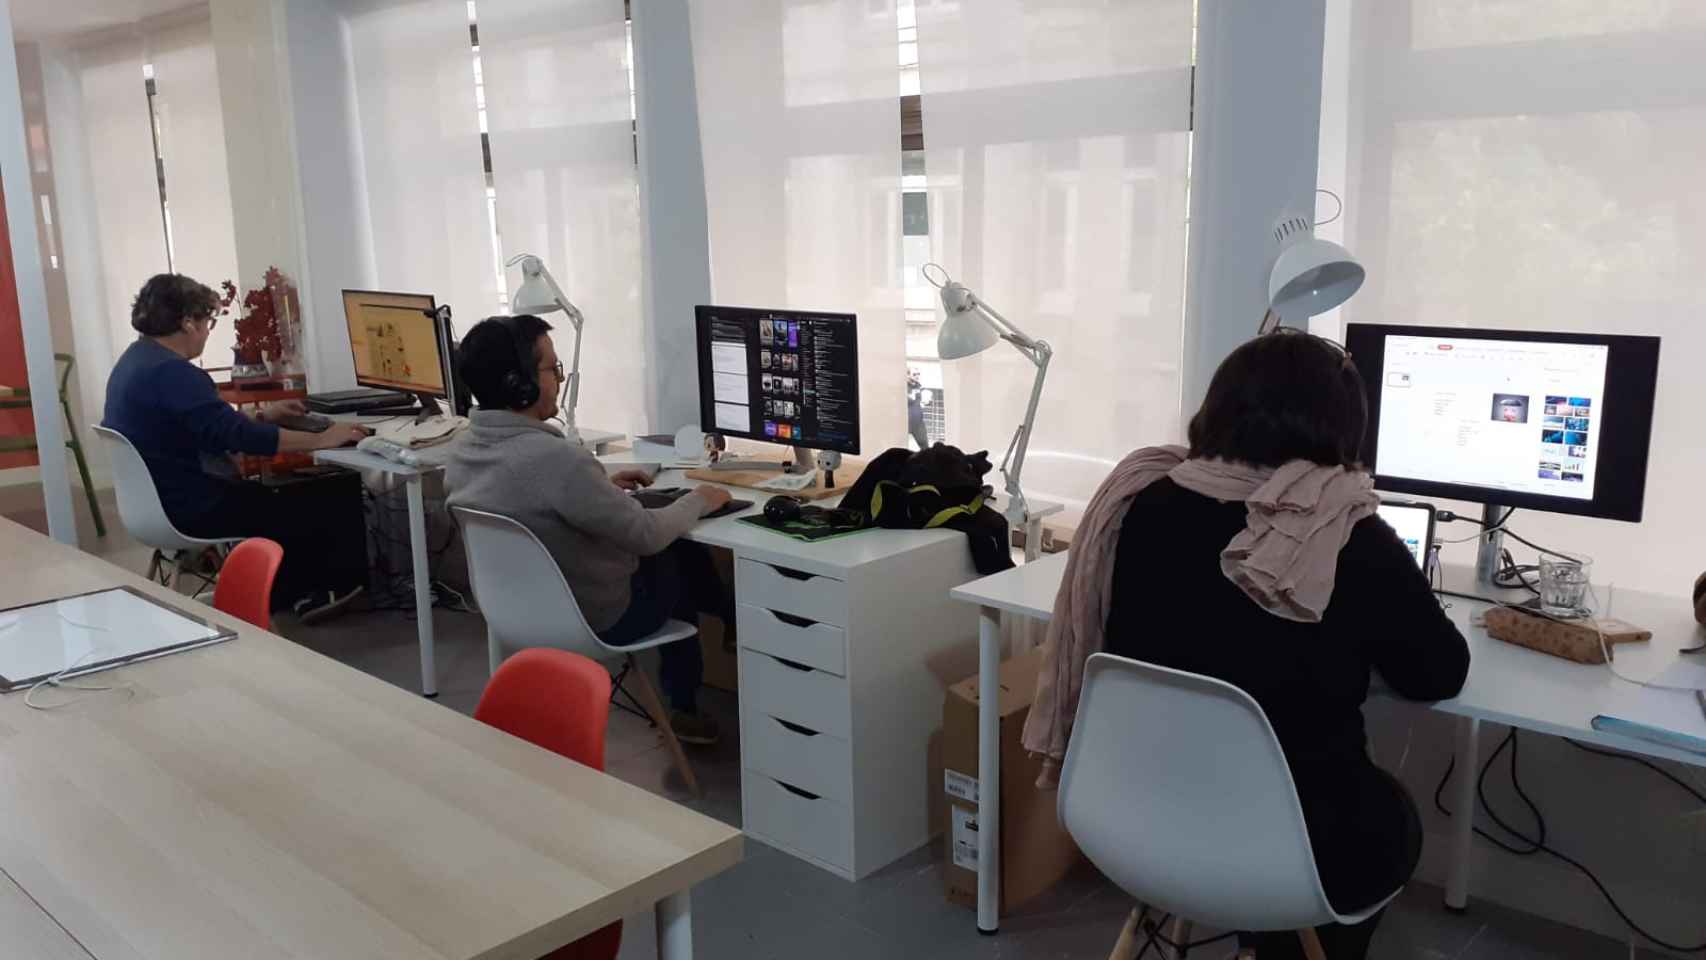 Tres usuarios comparten las instalaciones del centro de coworking Gazpacho de Cerezas